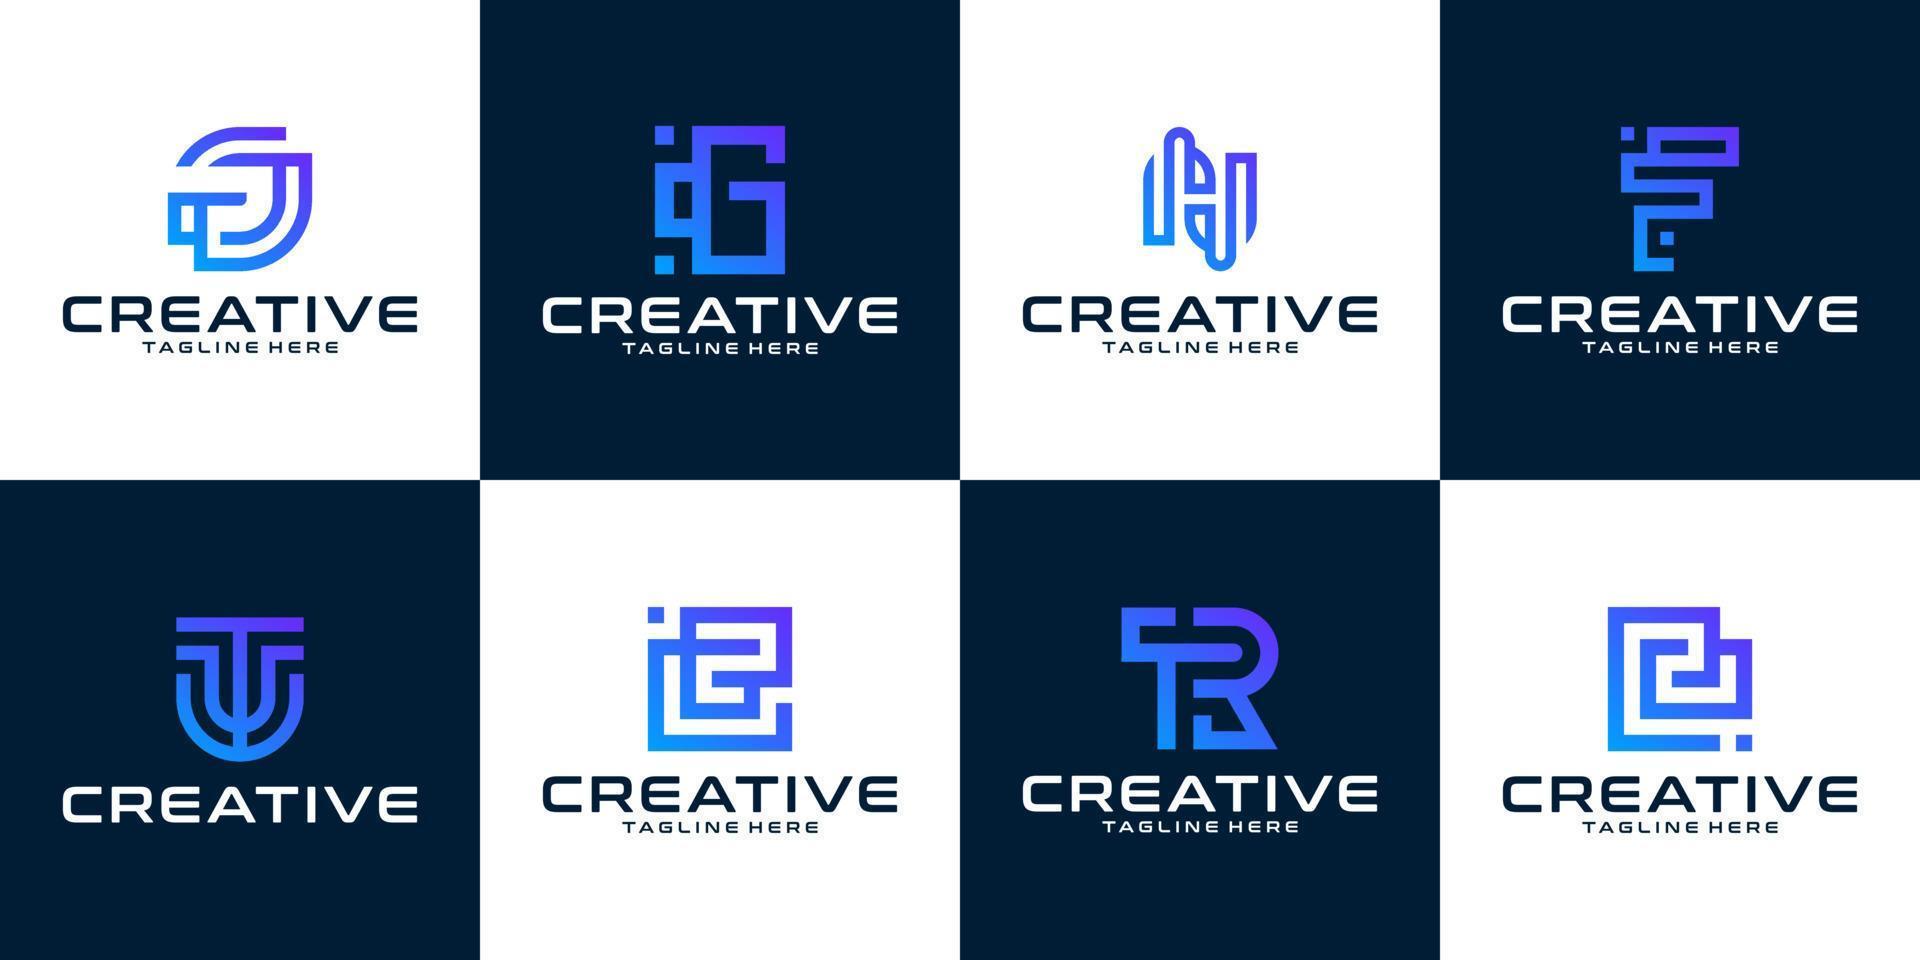 conjunto de plantillas de diseño de logotipo de carta de monograma creativo vector